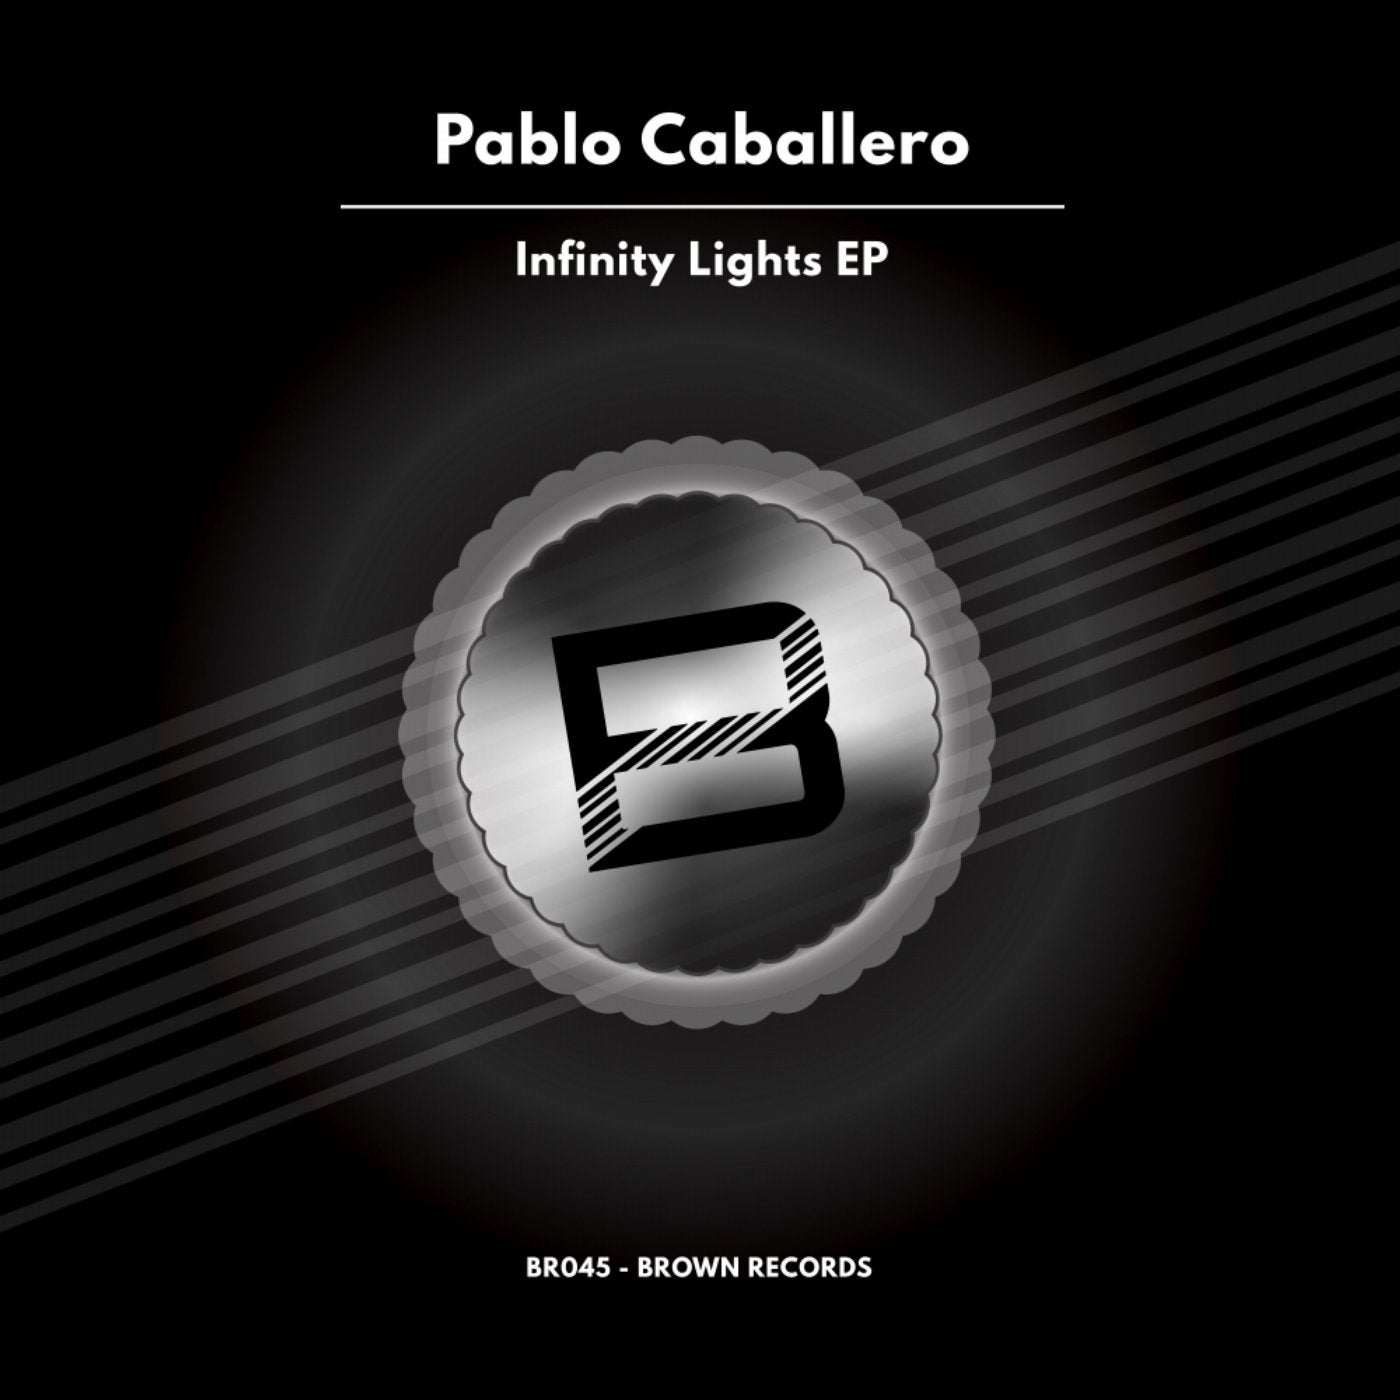 Infinity Lights EP